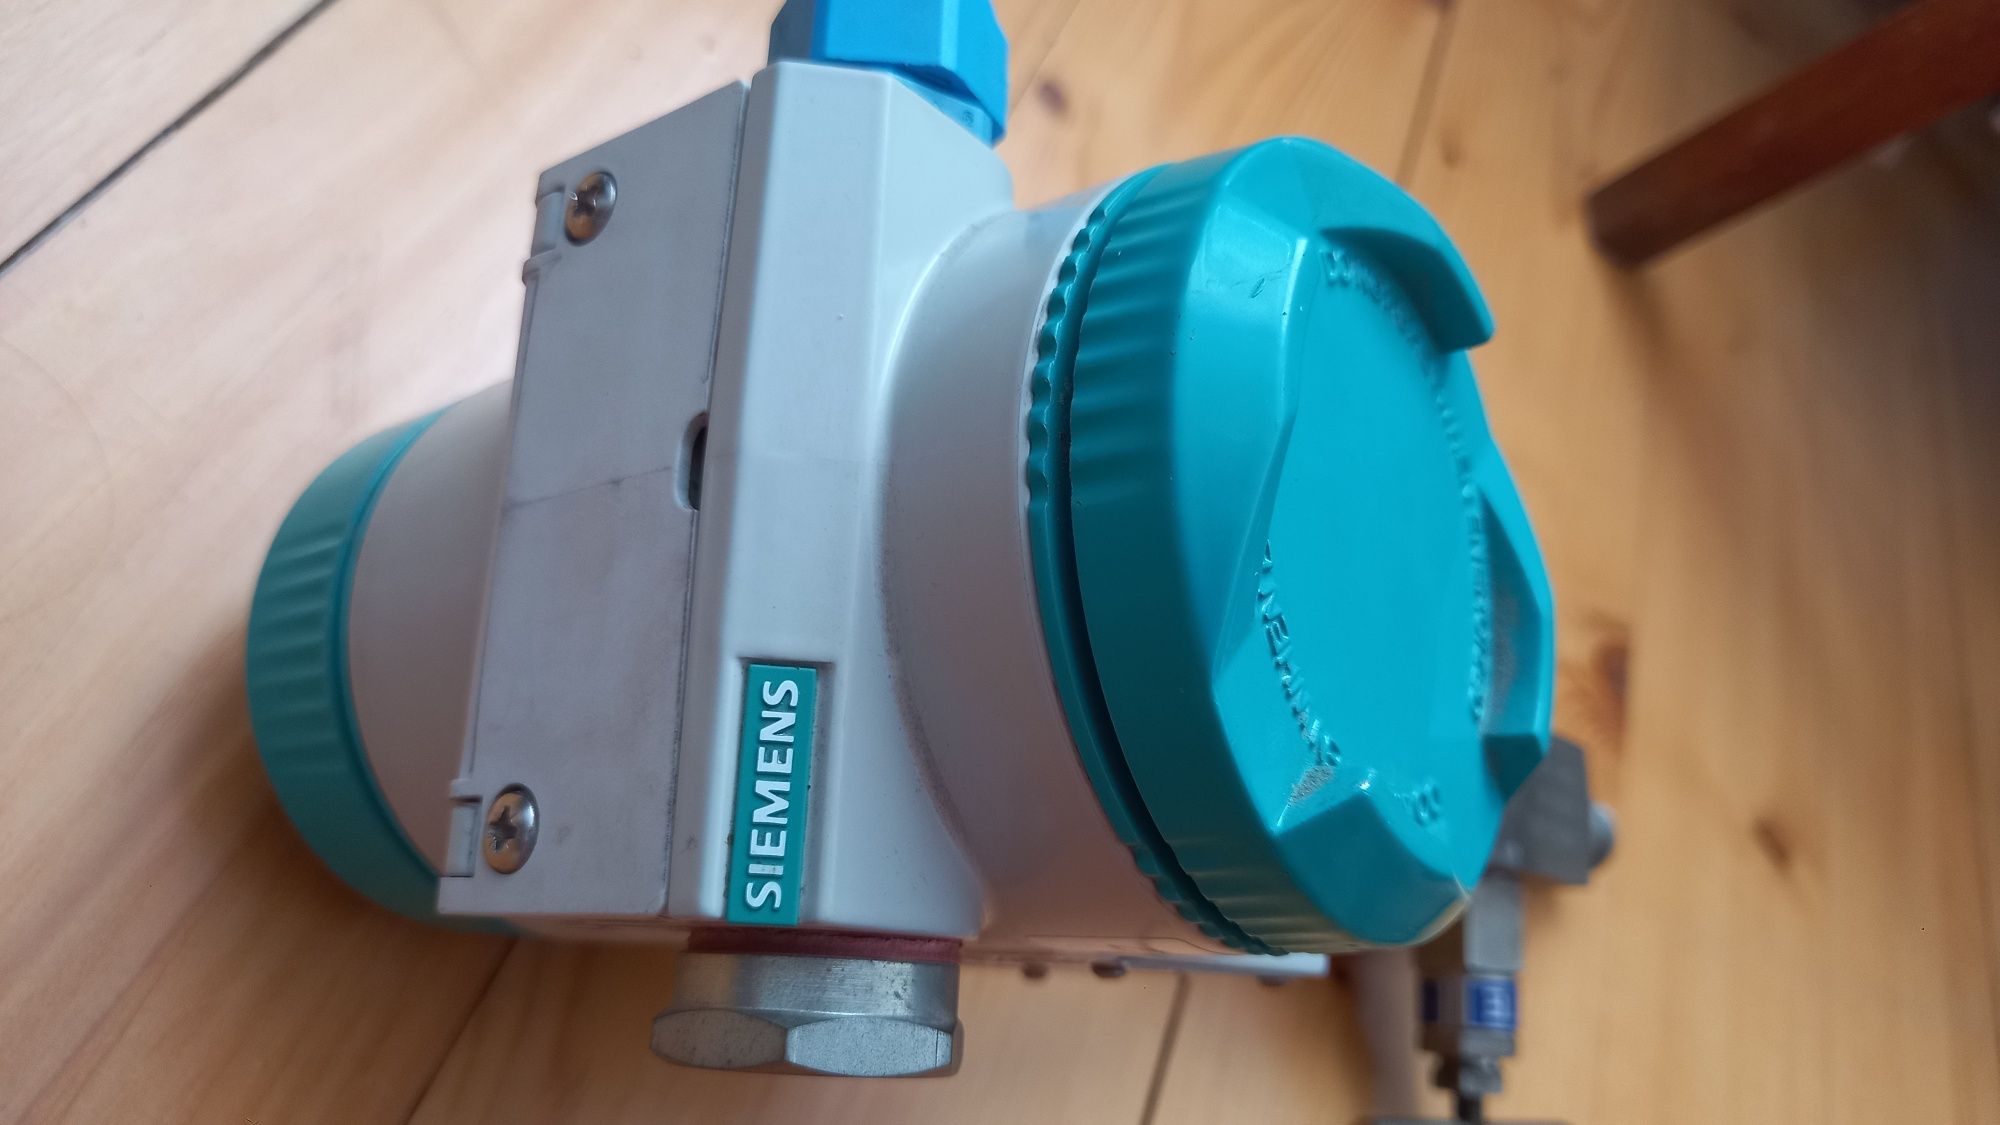 Sitrans P Siemens D-76181 вимірювач тиску